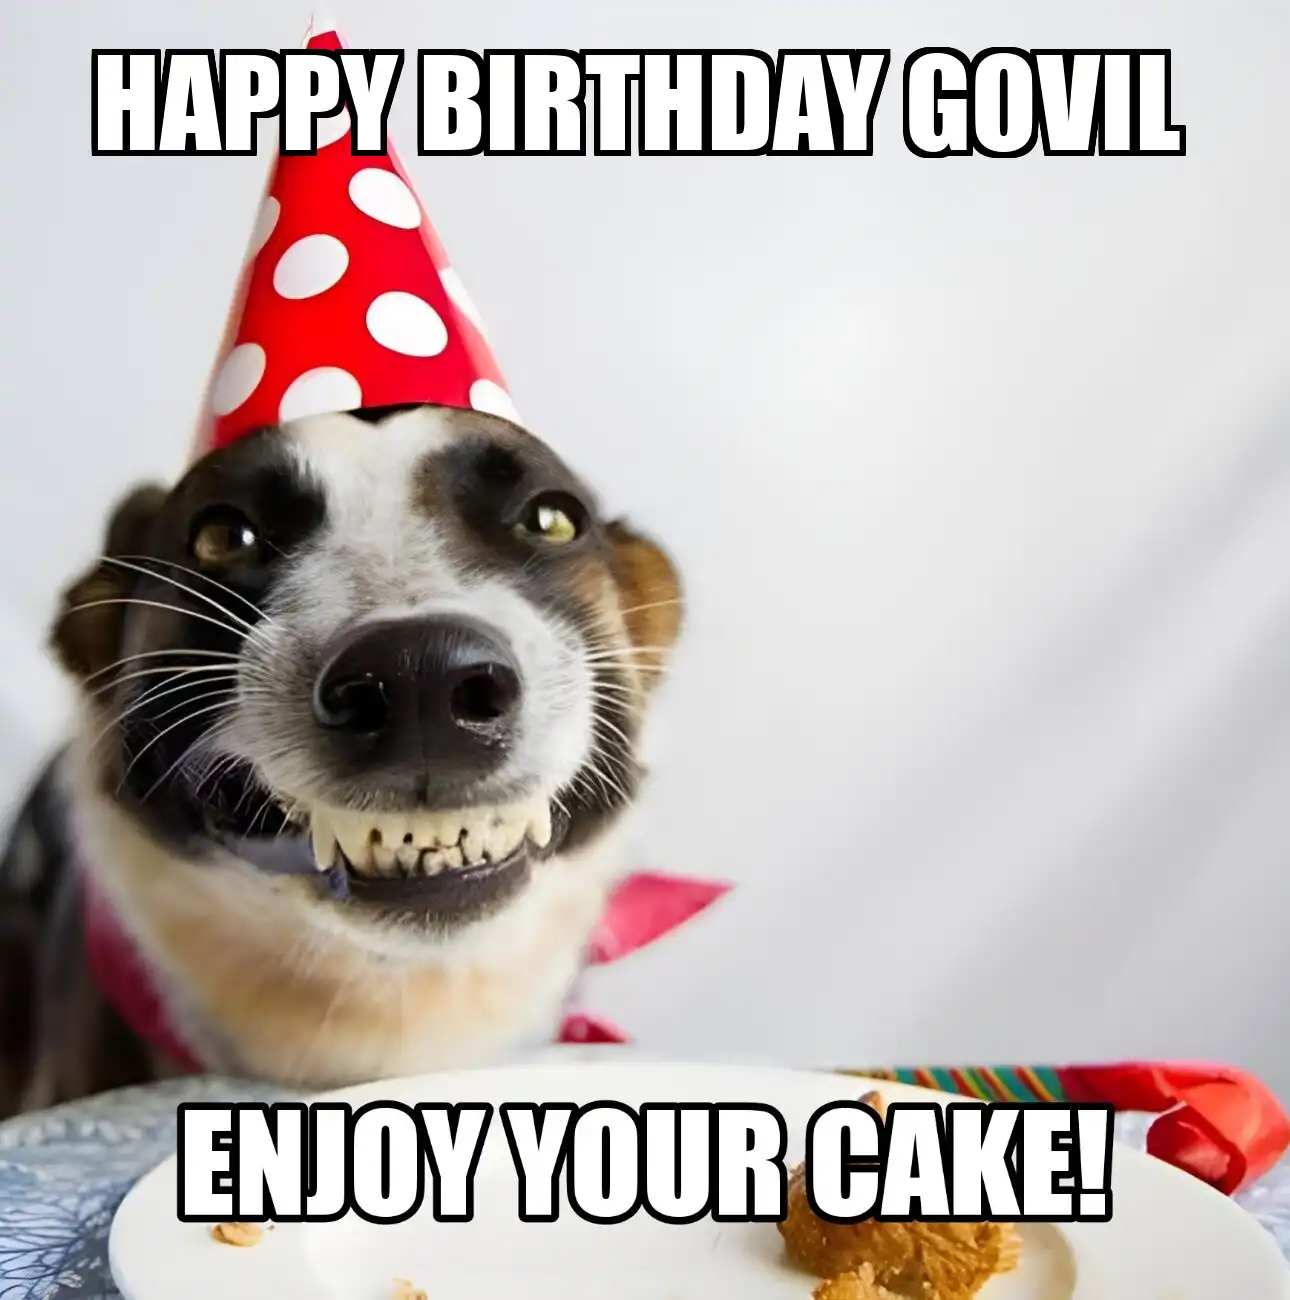 Happy Birthday Govil Enjoy Your Cake Dog Meme